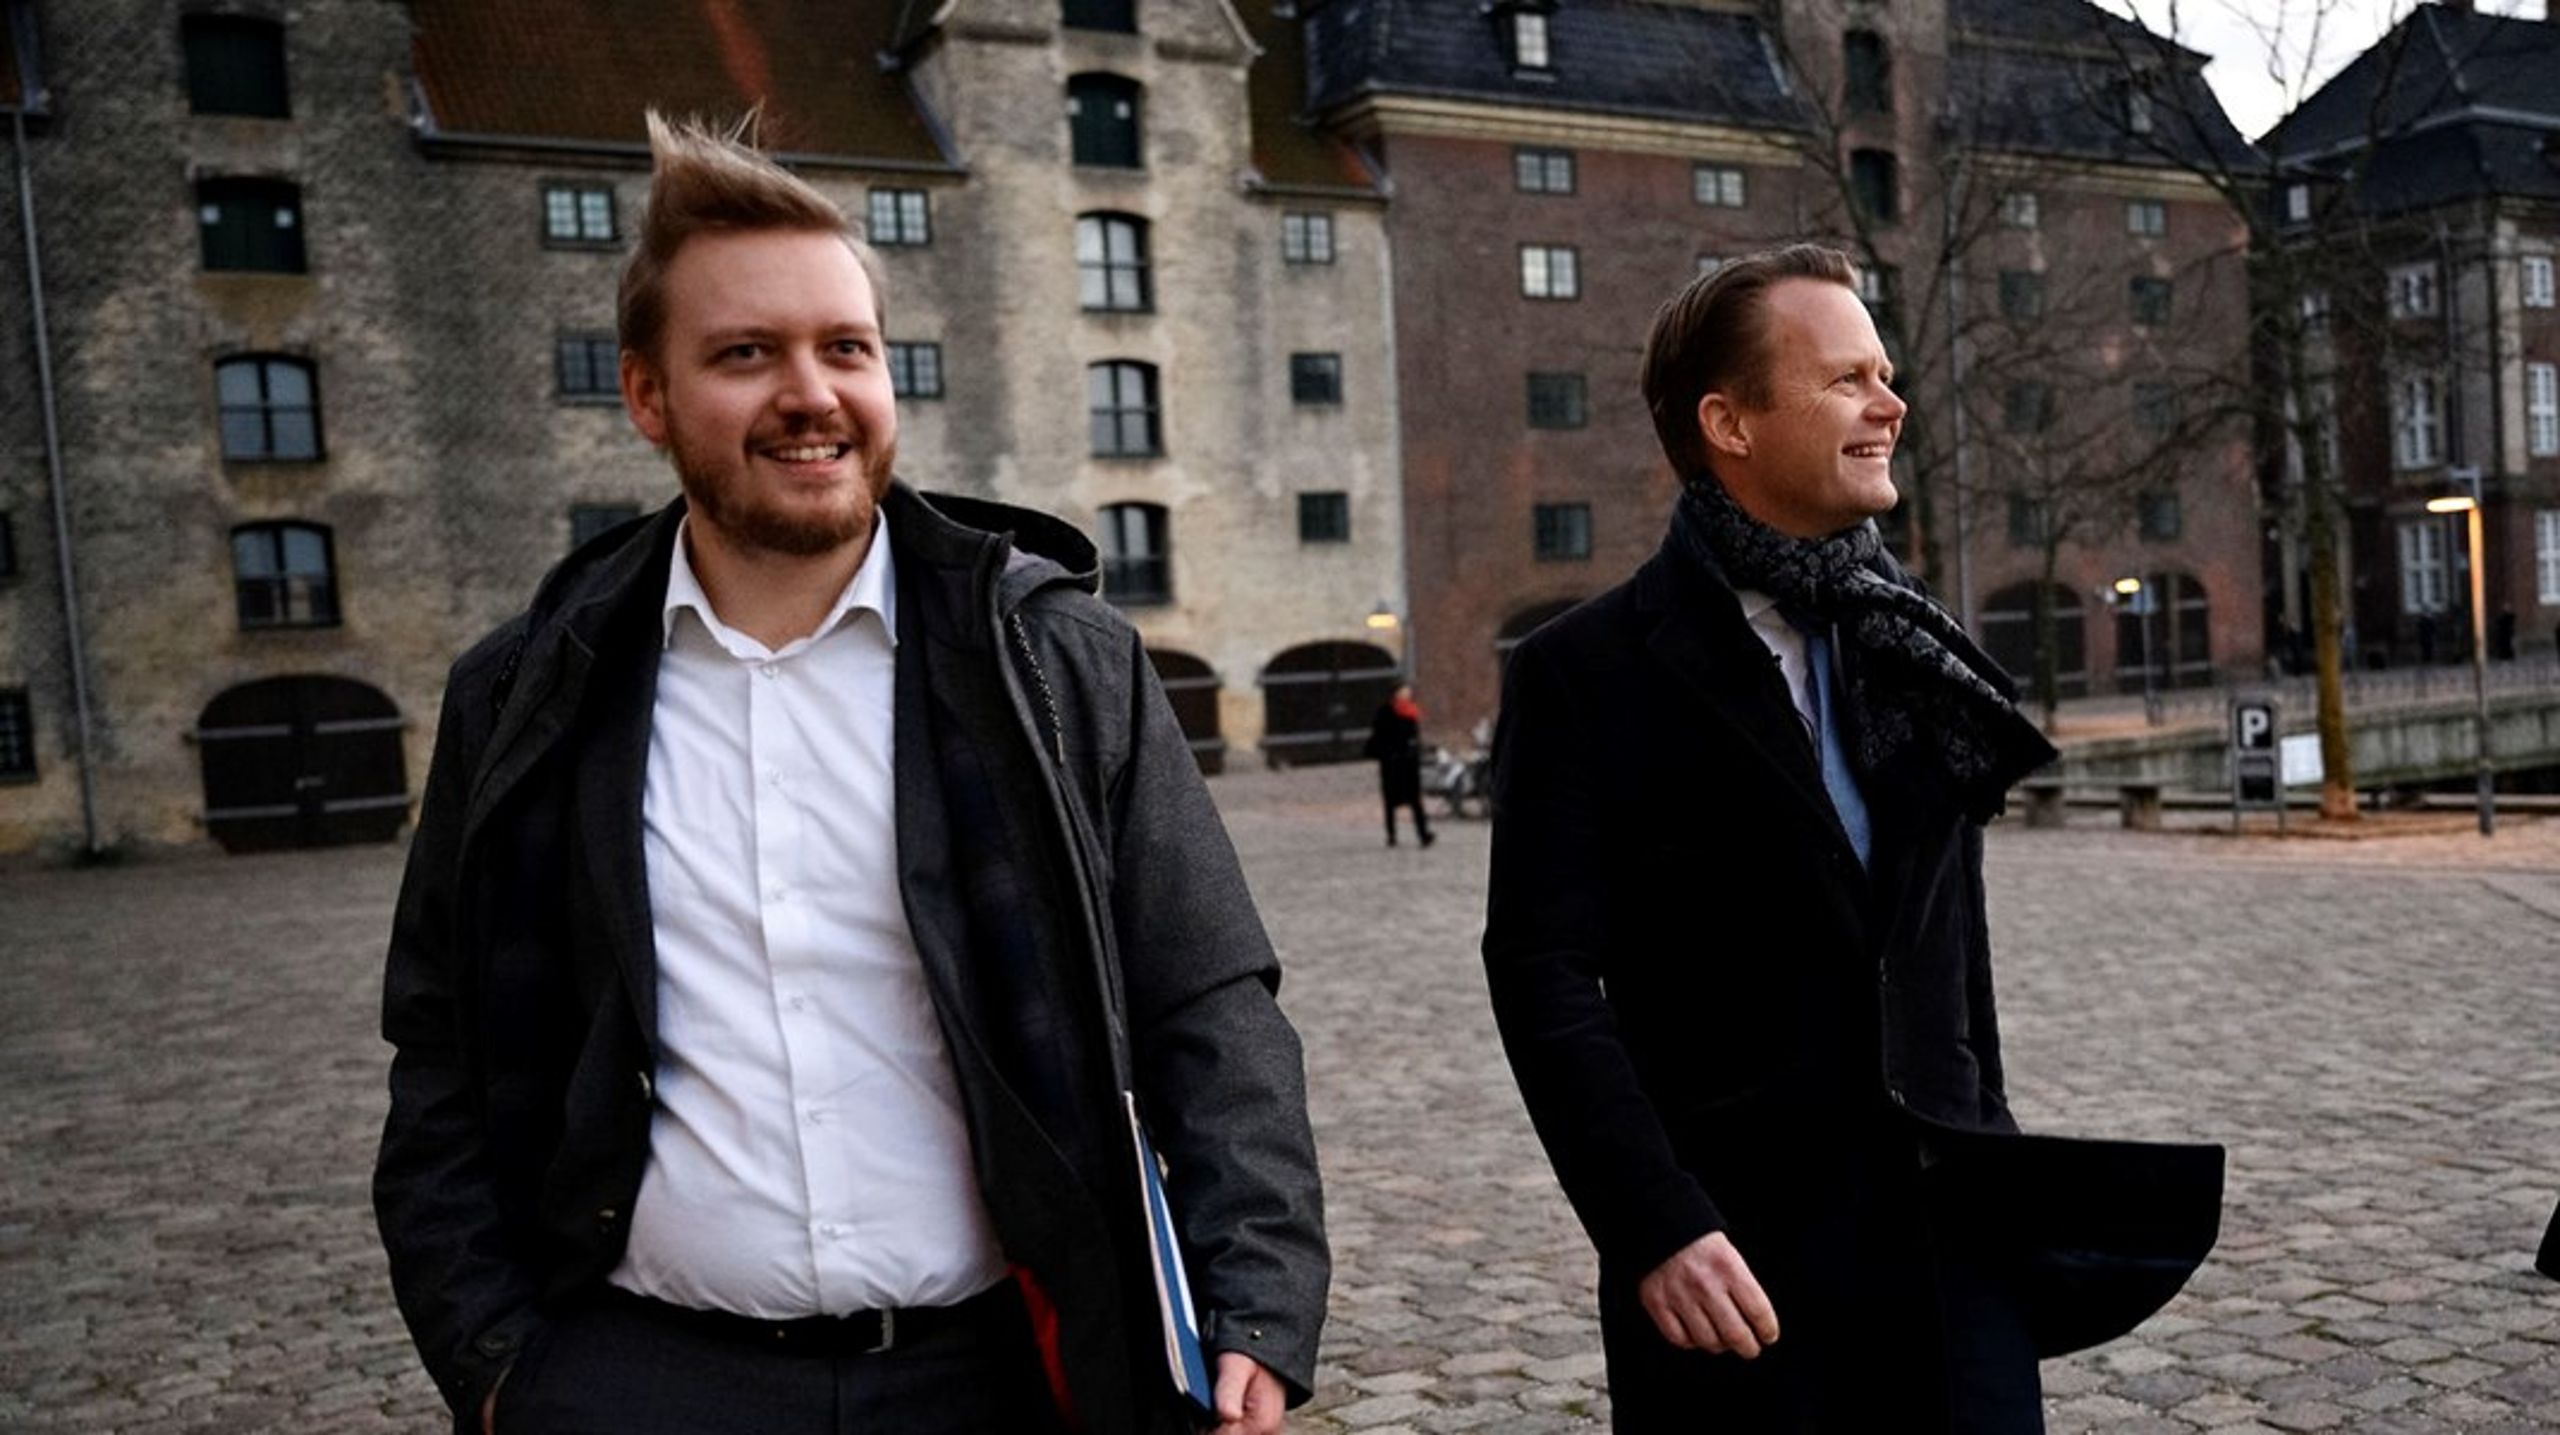 Ole Rydahl Svensson har arbejdet sammen med Jeppe Kofod i over otte år. Nu skifter han rollen som særlig rådgiver for udenrigsministeren ud med stillingen som afdelingschef for public affairs hos Green Power Denmark.